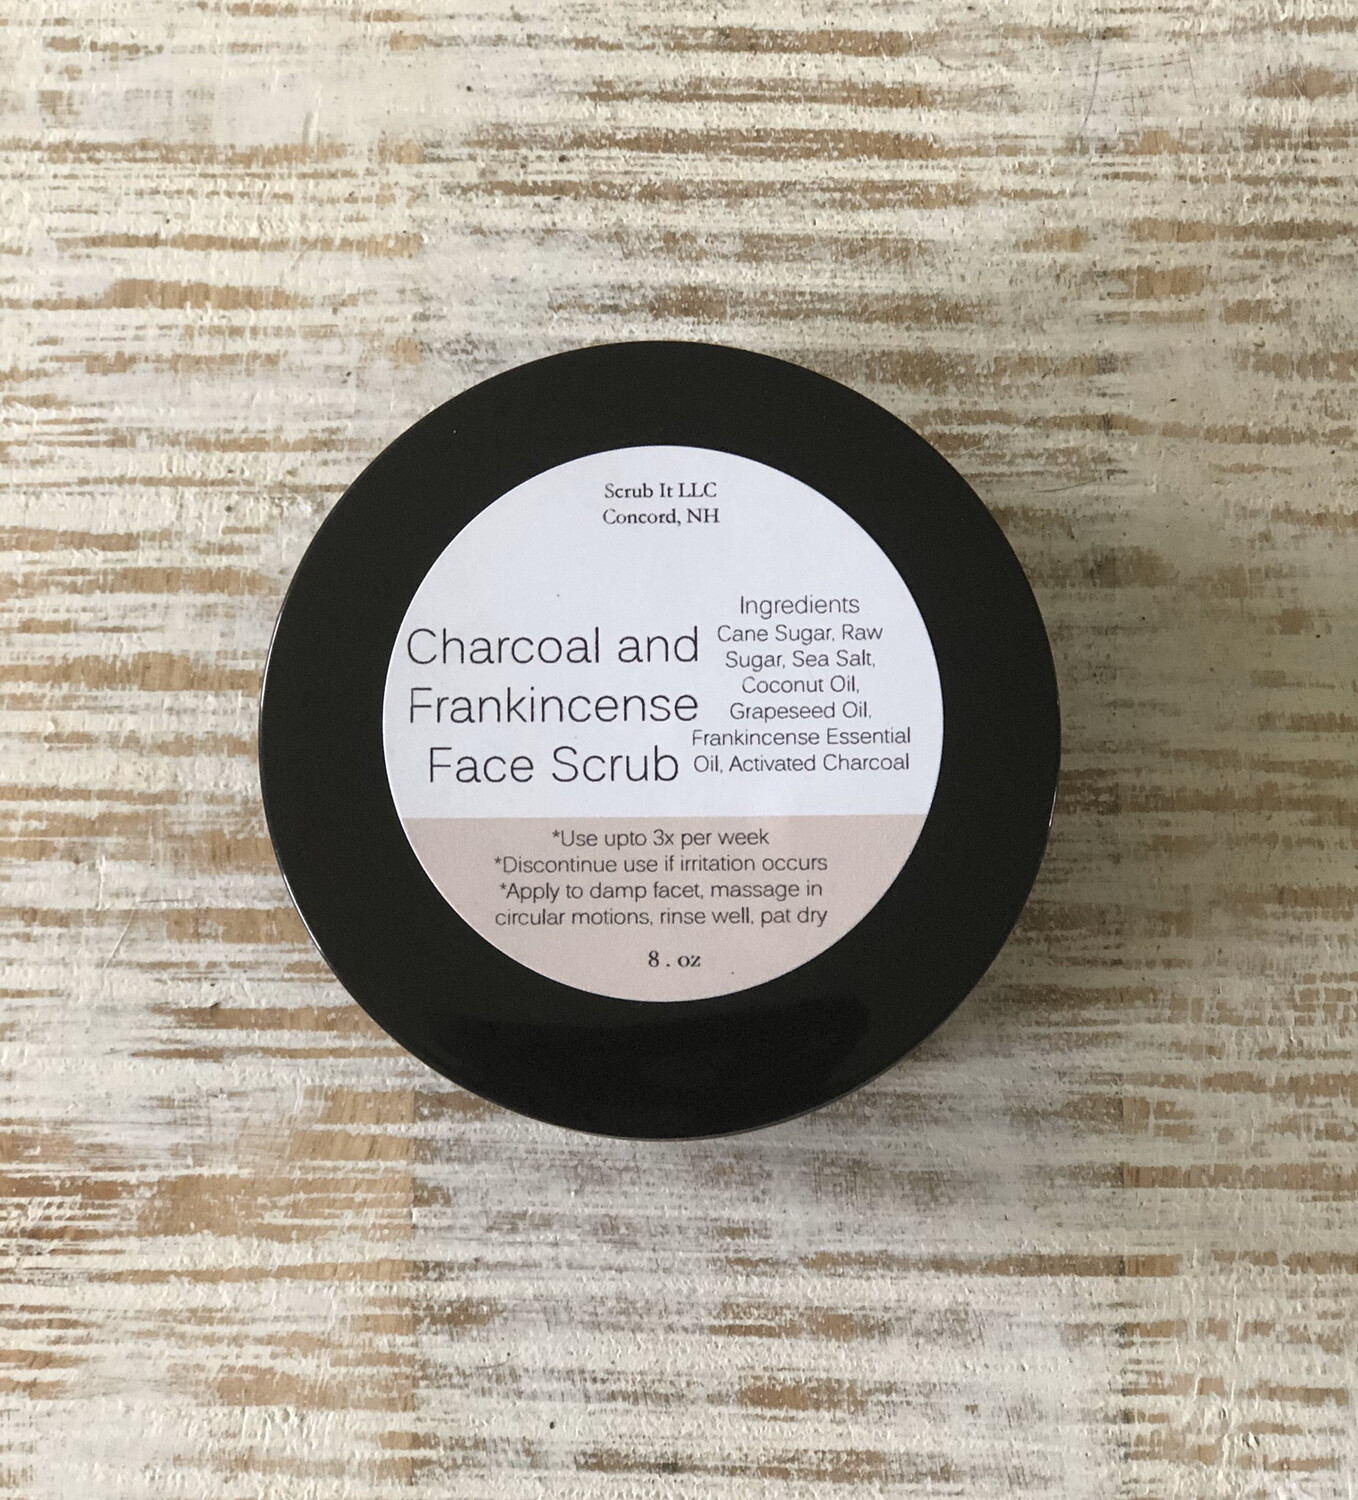 Charcol andover Frankincense Face Scrub